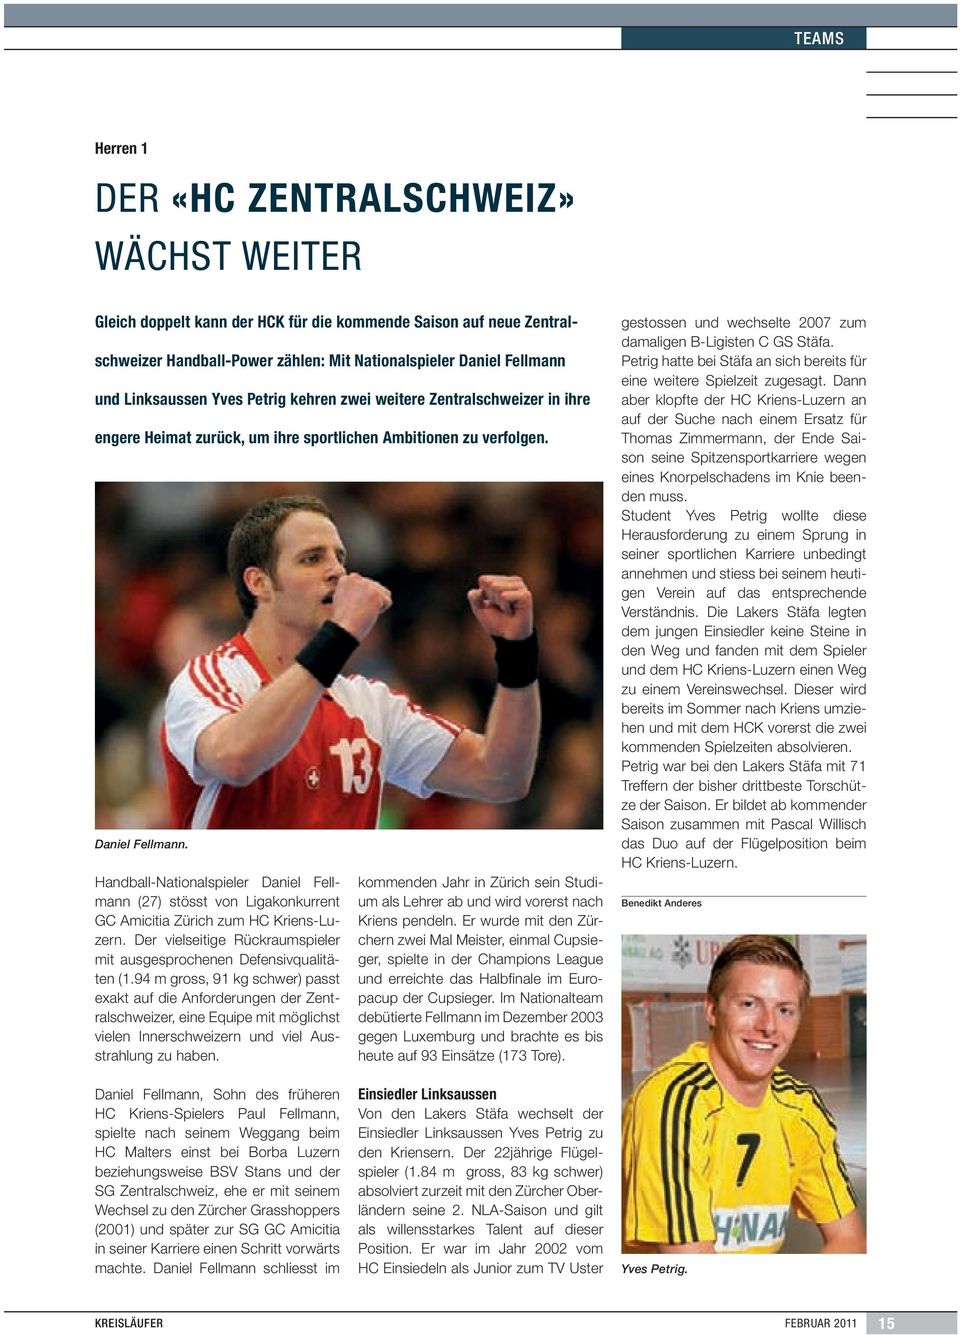 Handball-Nationalspieler Daniel Fellmann (27) stösst von Ligakonkurrent GC Amicitia Zürich zum HC Kriens-Luzern. Der vielseitige Rückraumspieler mit ausgesprochenen Defensivqualitäten (1.